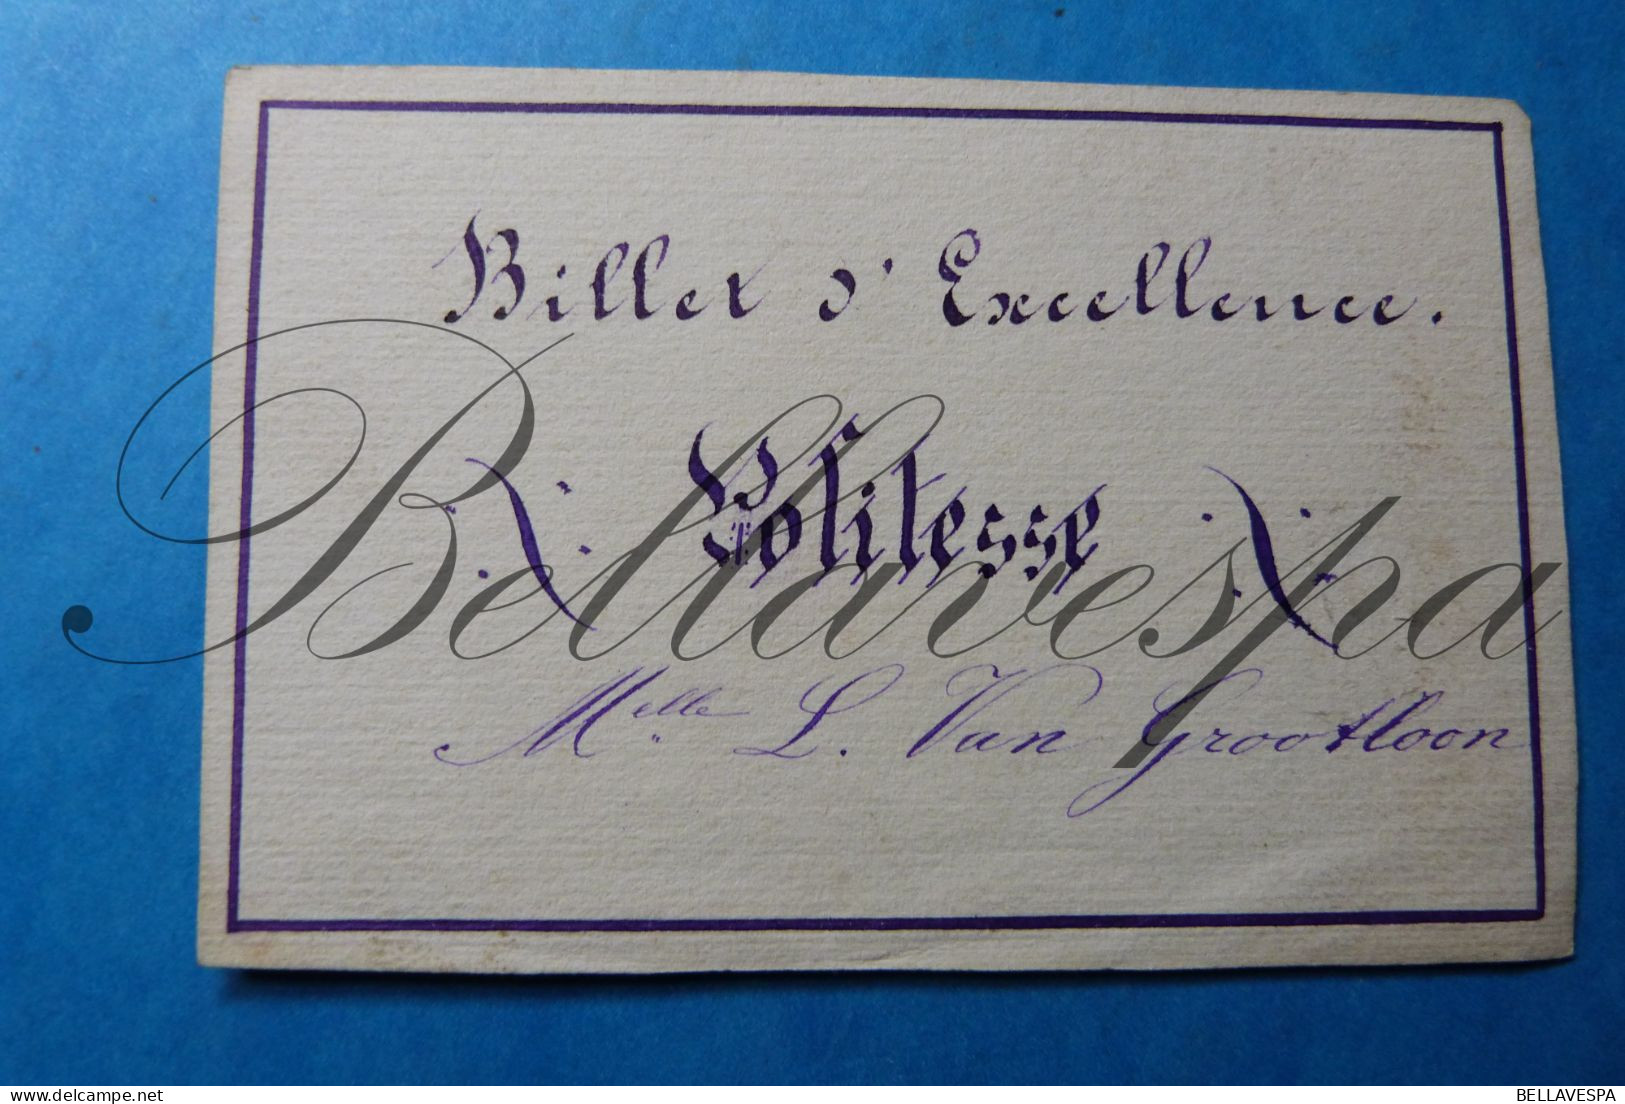 Wellen 1877 & 1879 -Billet D'Excellence M.elle L.VAN GROOTLOON  Signe M.M.Augustine  2 Stuks - Documents Historiques